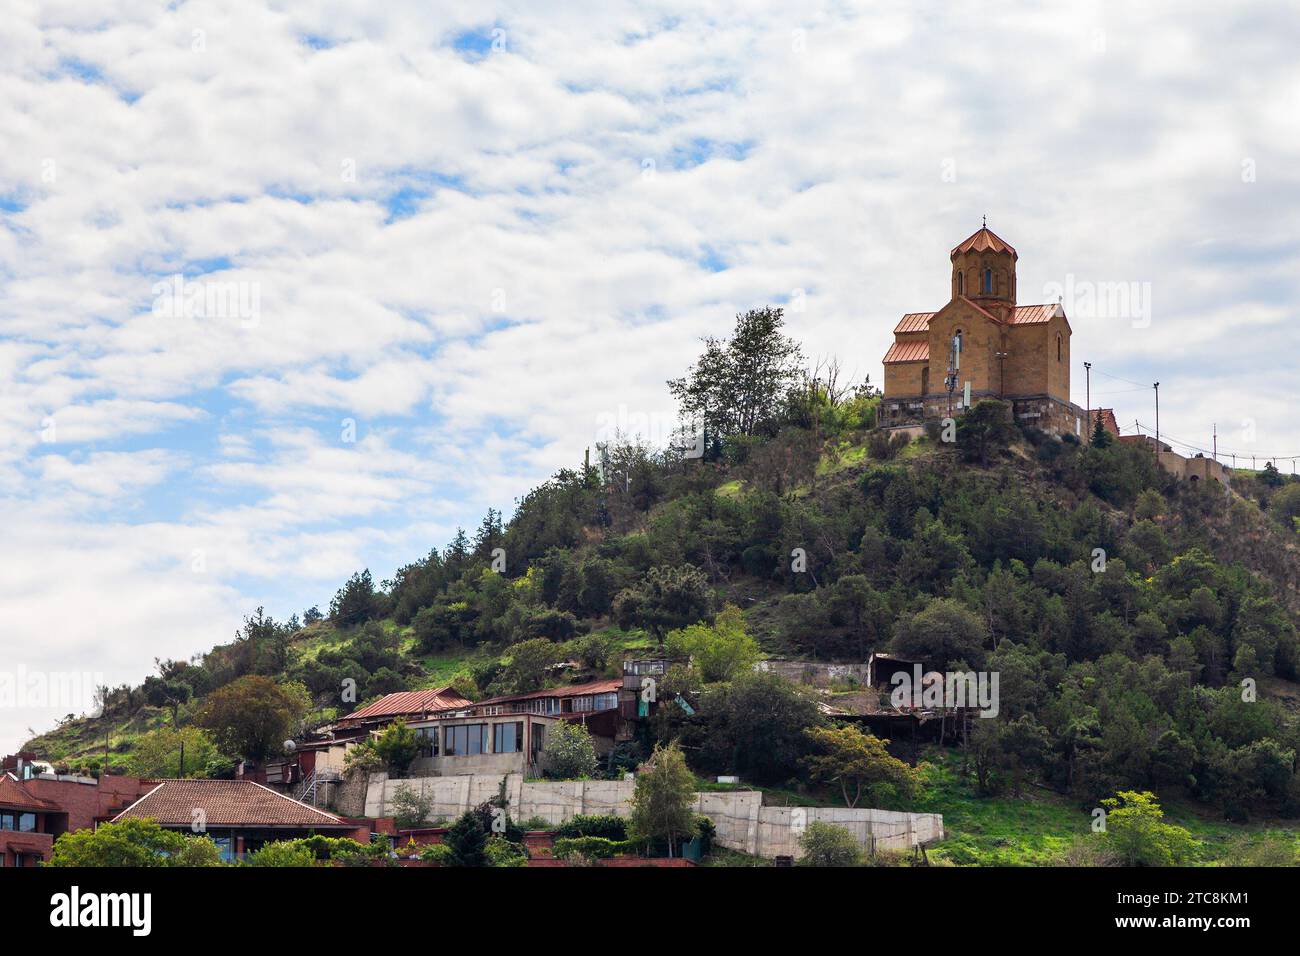 travel to Georgia - Favorsky Spaso-Preobrazhensky Monastery on Mount Taboris-Mta in Tbilisi city on cloudy autumn day Stock Photo